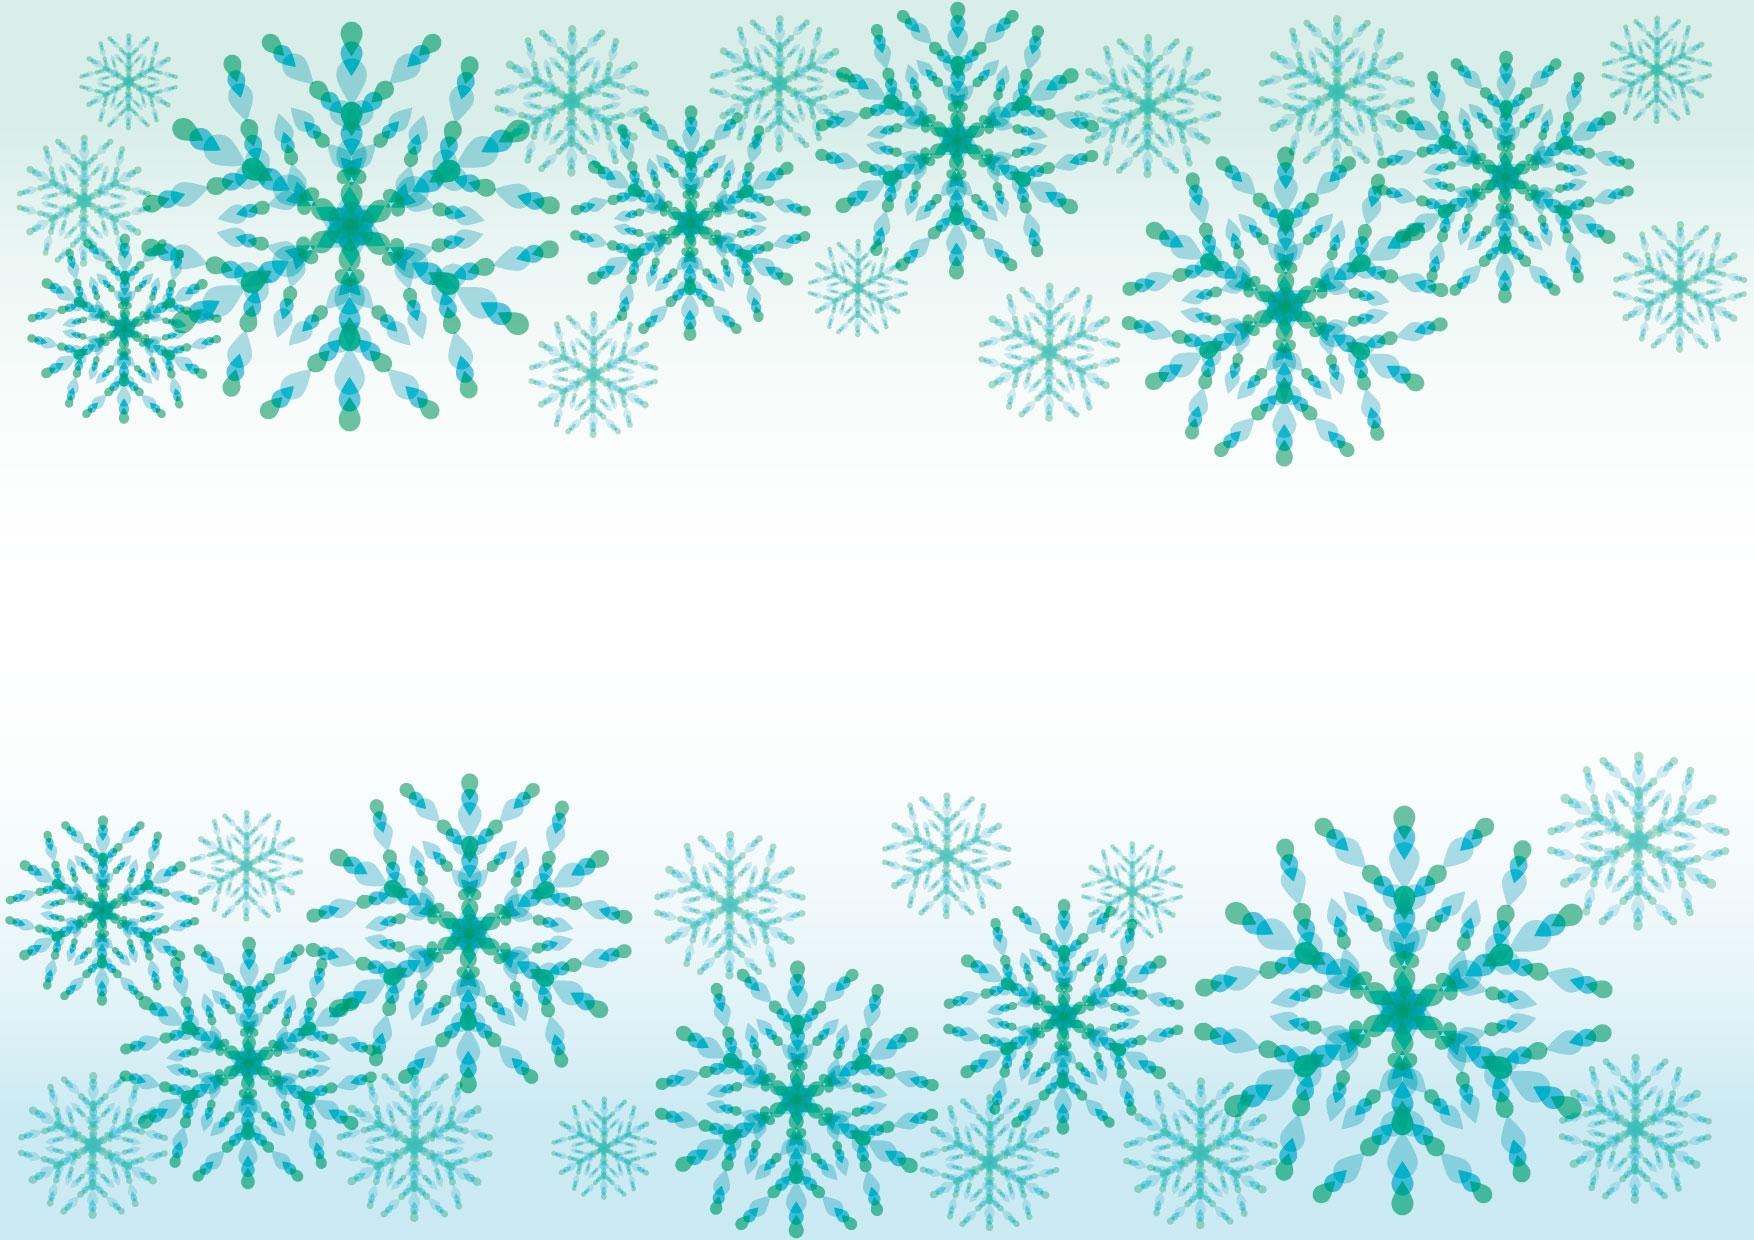 可愛いイラスト無料 雪の結晶 青 背景 Free Illustration Snowflakes Blue Background 公式 イラストダウンロード